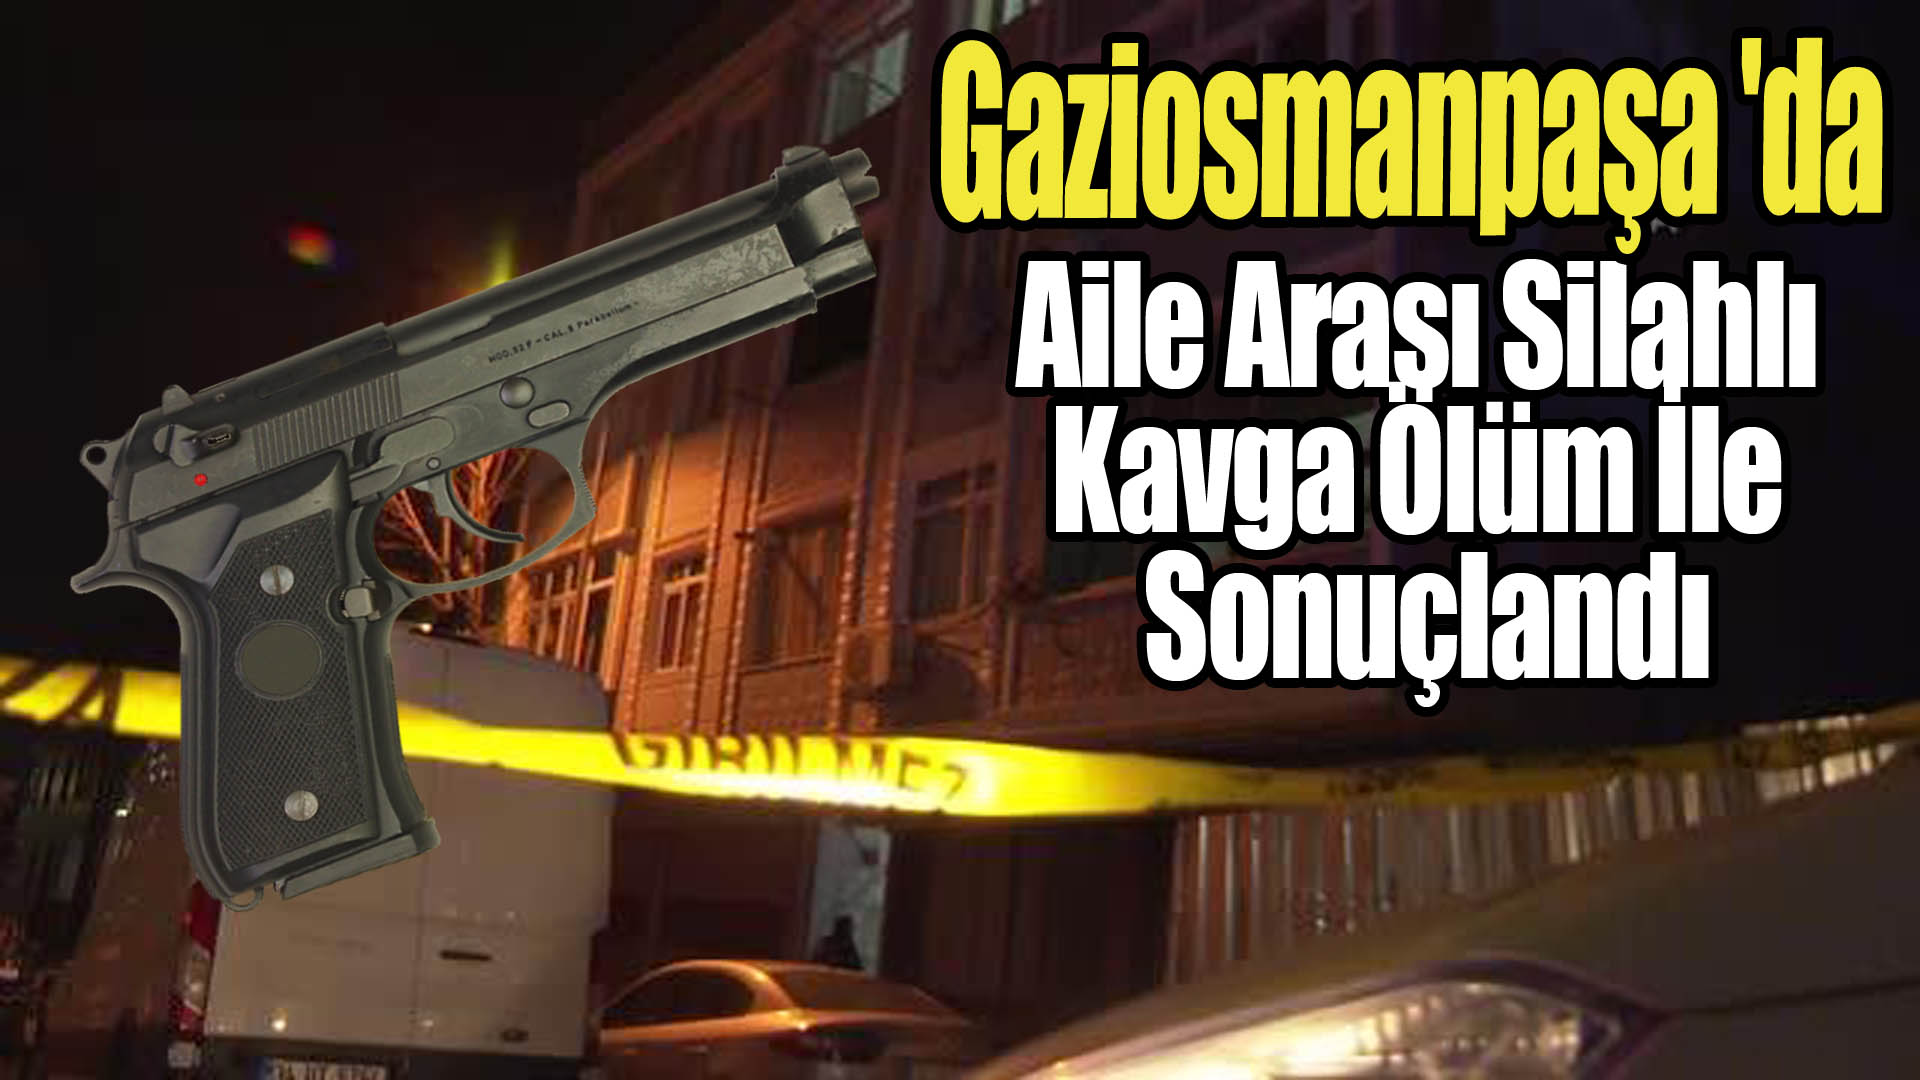 Gaziosmanpaşa ‘da Aile Arası Silahlı Kavga Ölüm İle Sonuçlandı